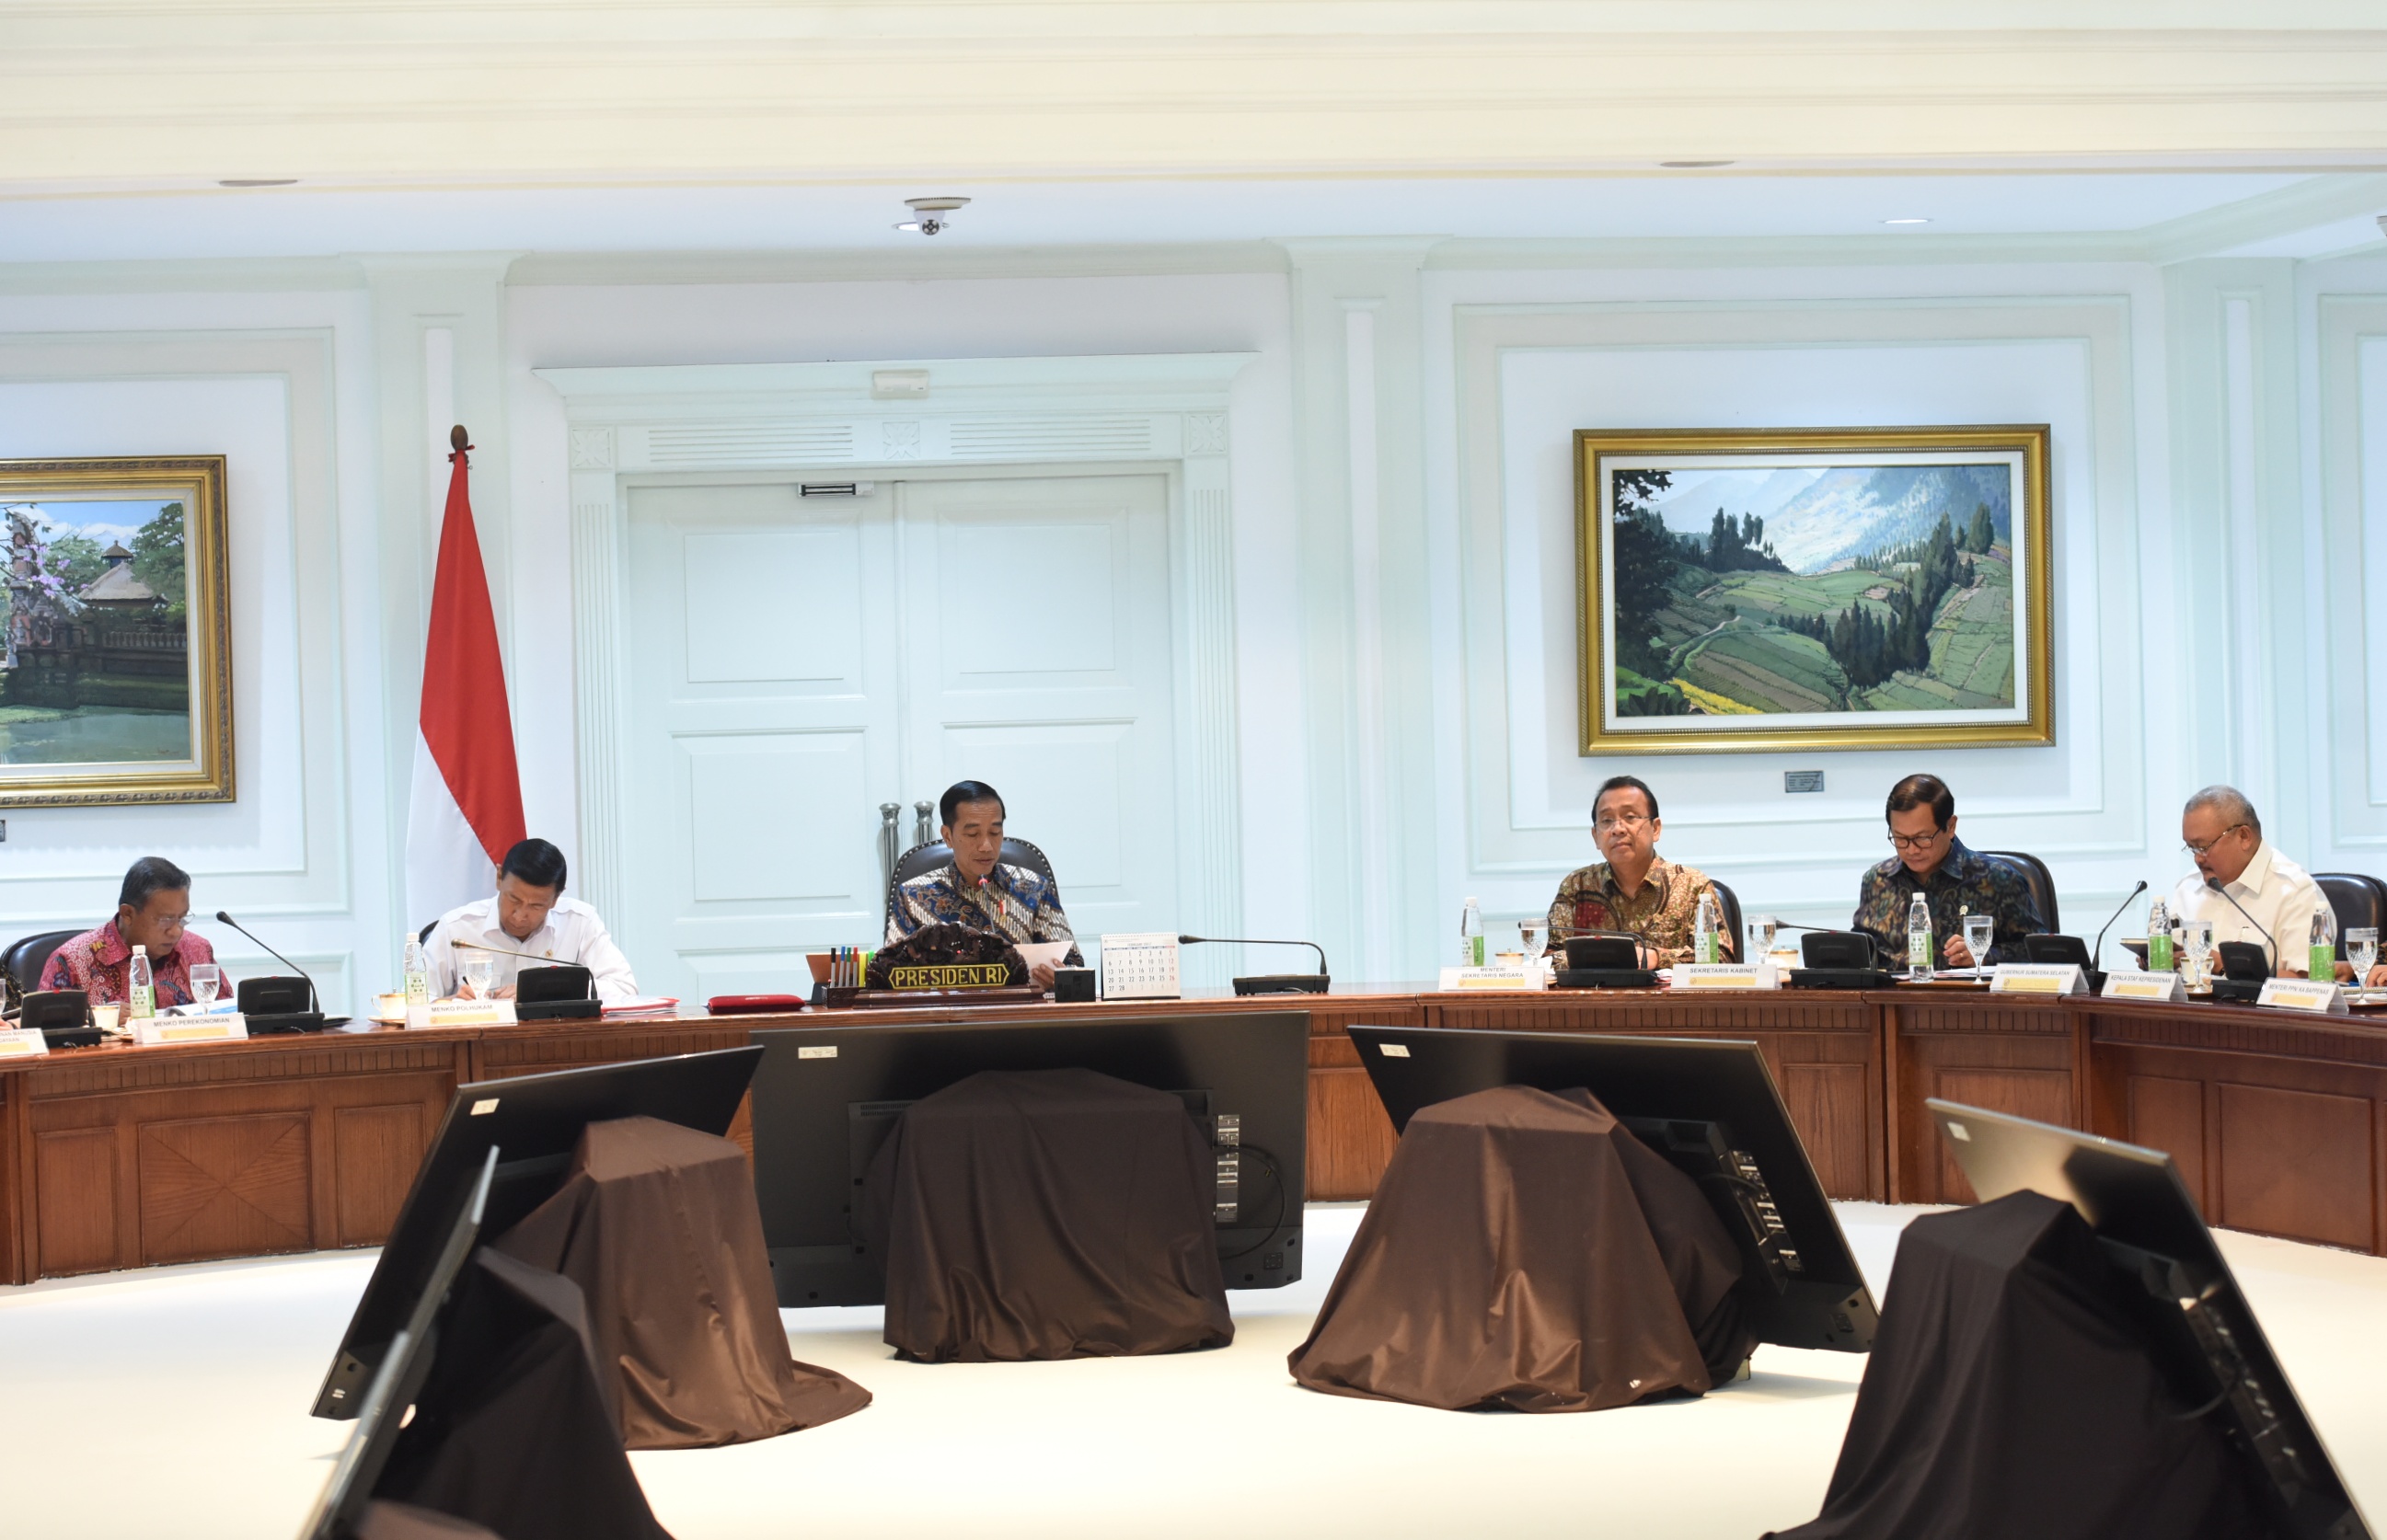 Gubernur Sumsel Alex Noerdin (baju putih) mengikuti rapat terbatas yang dipimpin oleh Presiden Jokowi, di Kantor Presiden, Jakarta, Selasa (21/3) sore. (Foto: JAY/Humas)